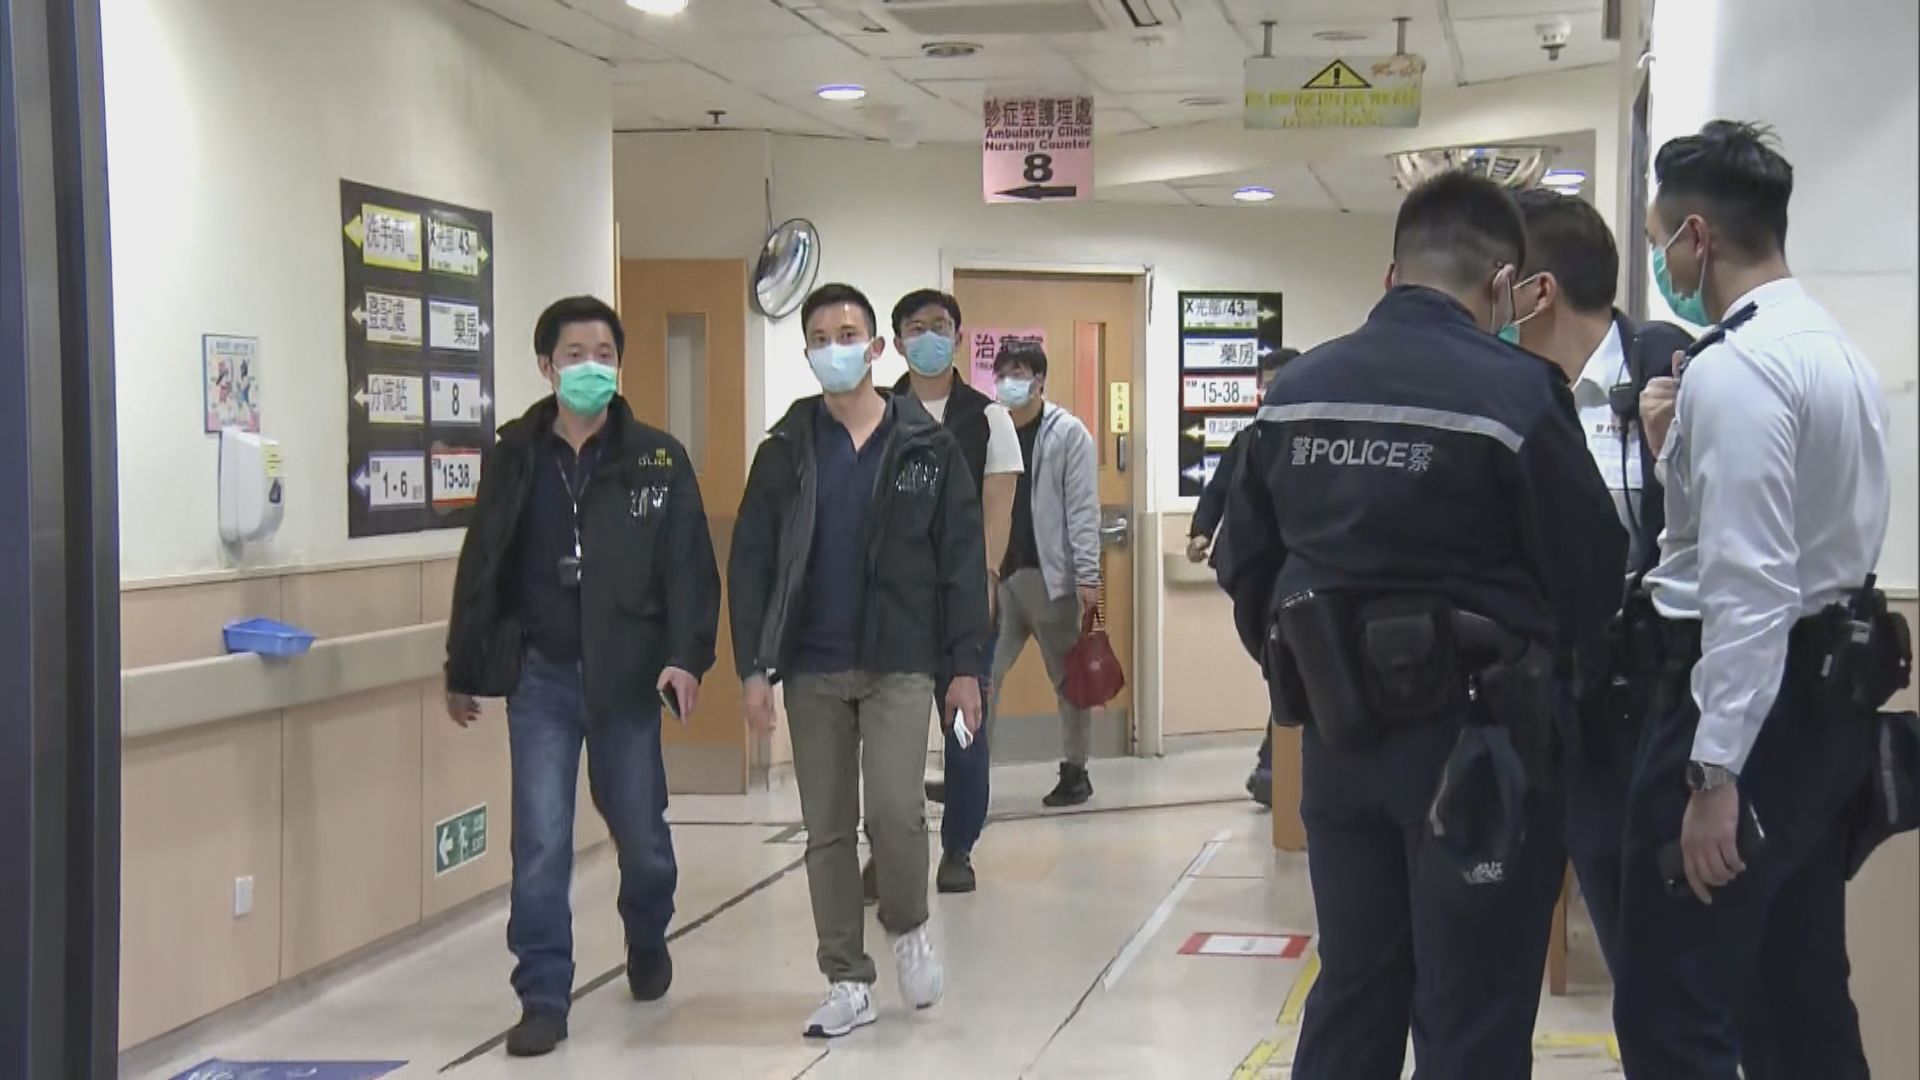 屯門醫院青年疑企圖搶警槍被捕